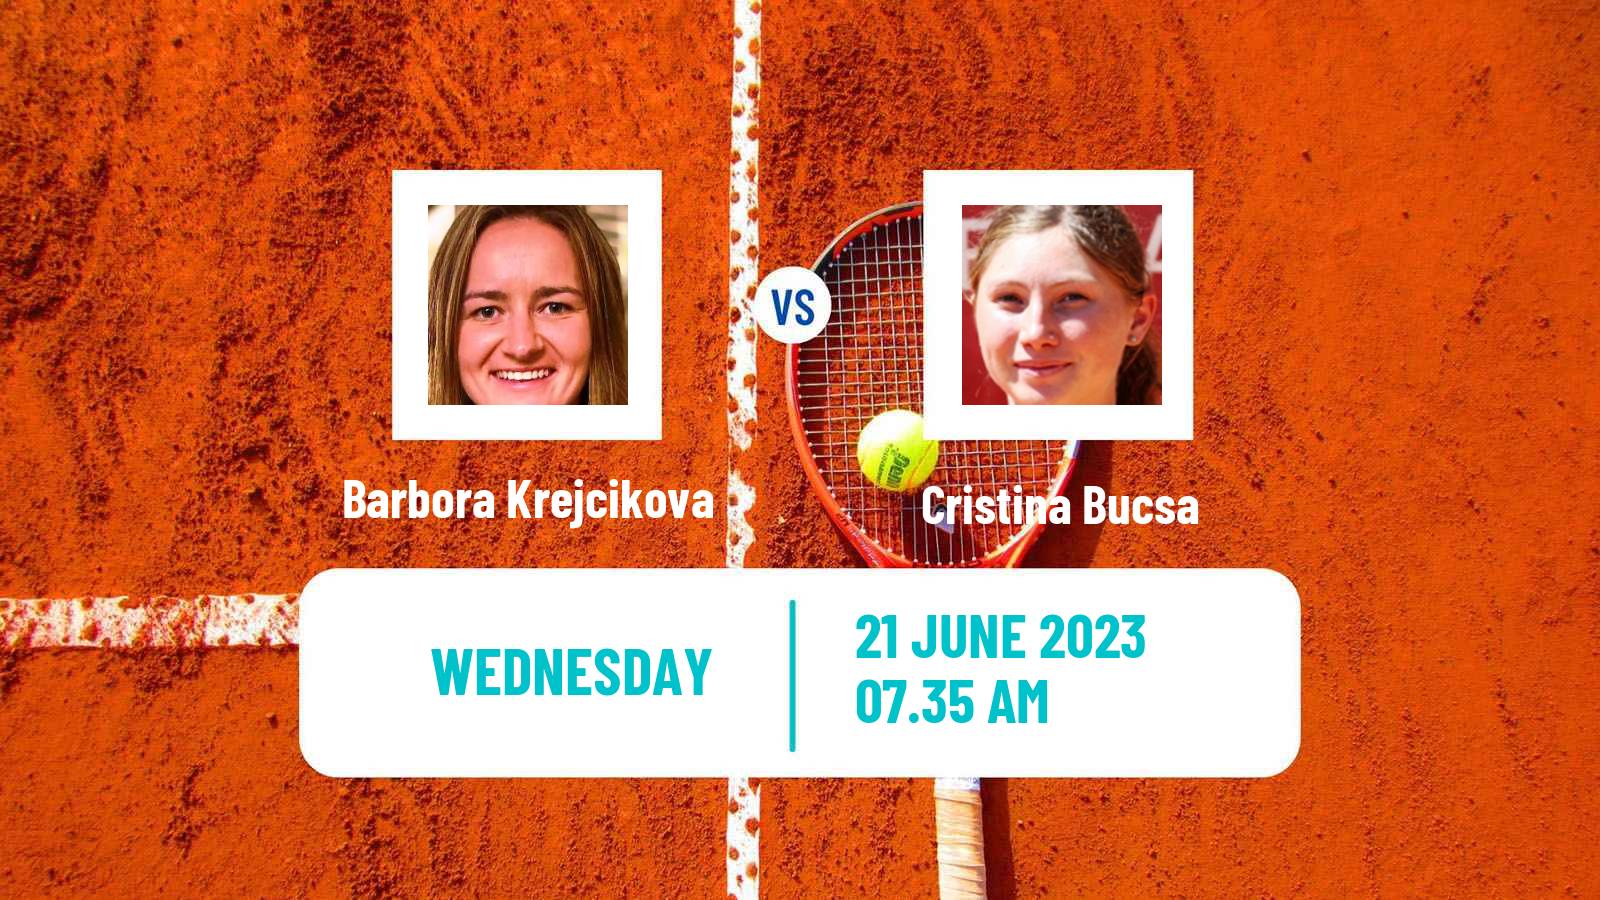 Tennis WTA Birmingham Barbora Krejcikova - Cristina Bucsa